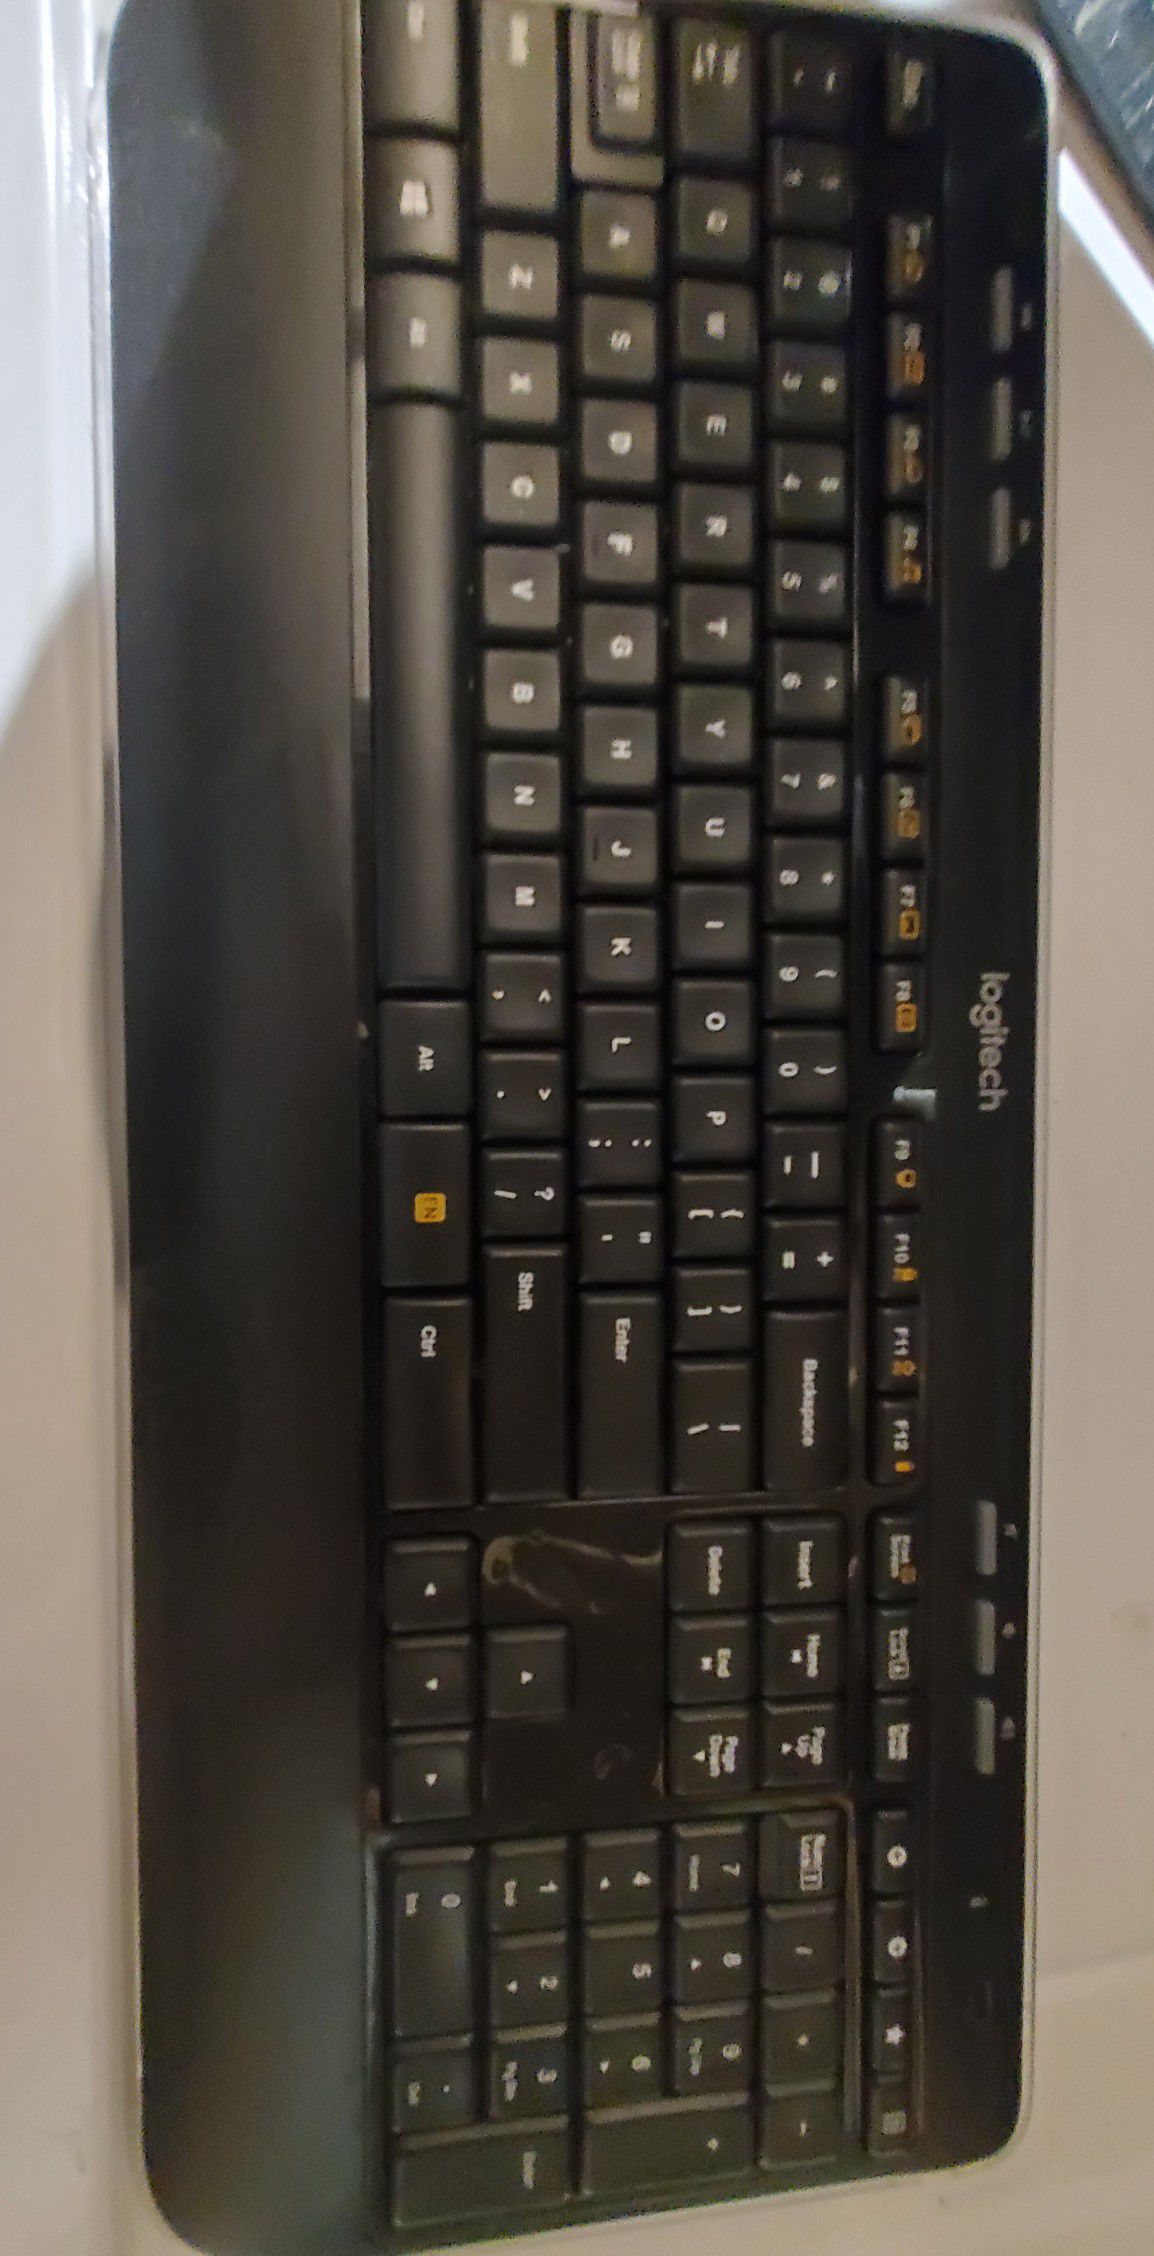 Logitech Wireless keyboard